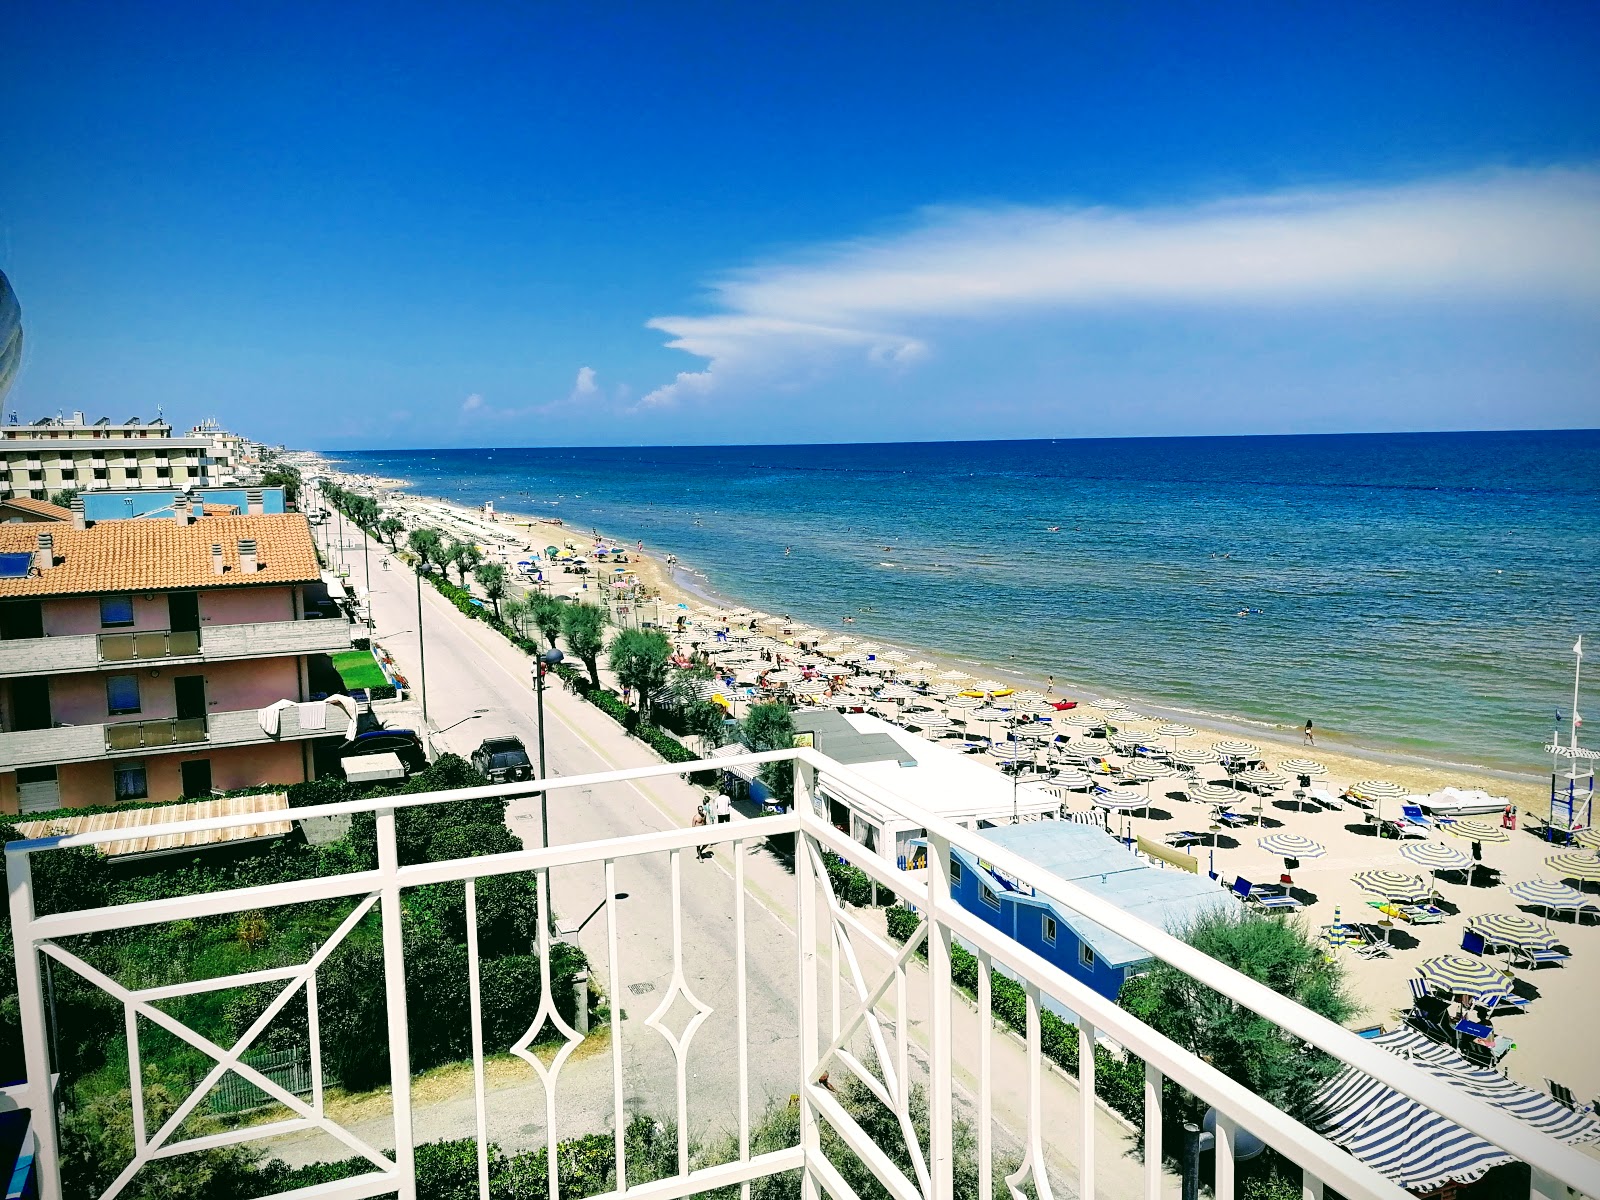 Foto af Marotta beach - populært sted blandt afslapningskendere